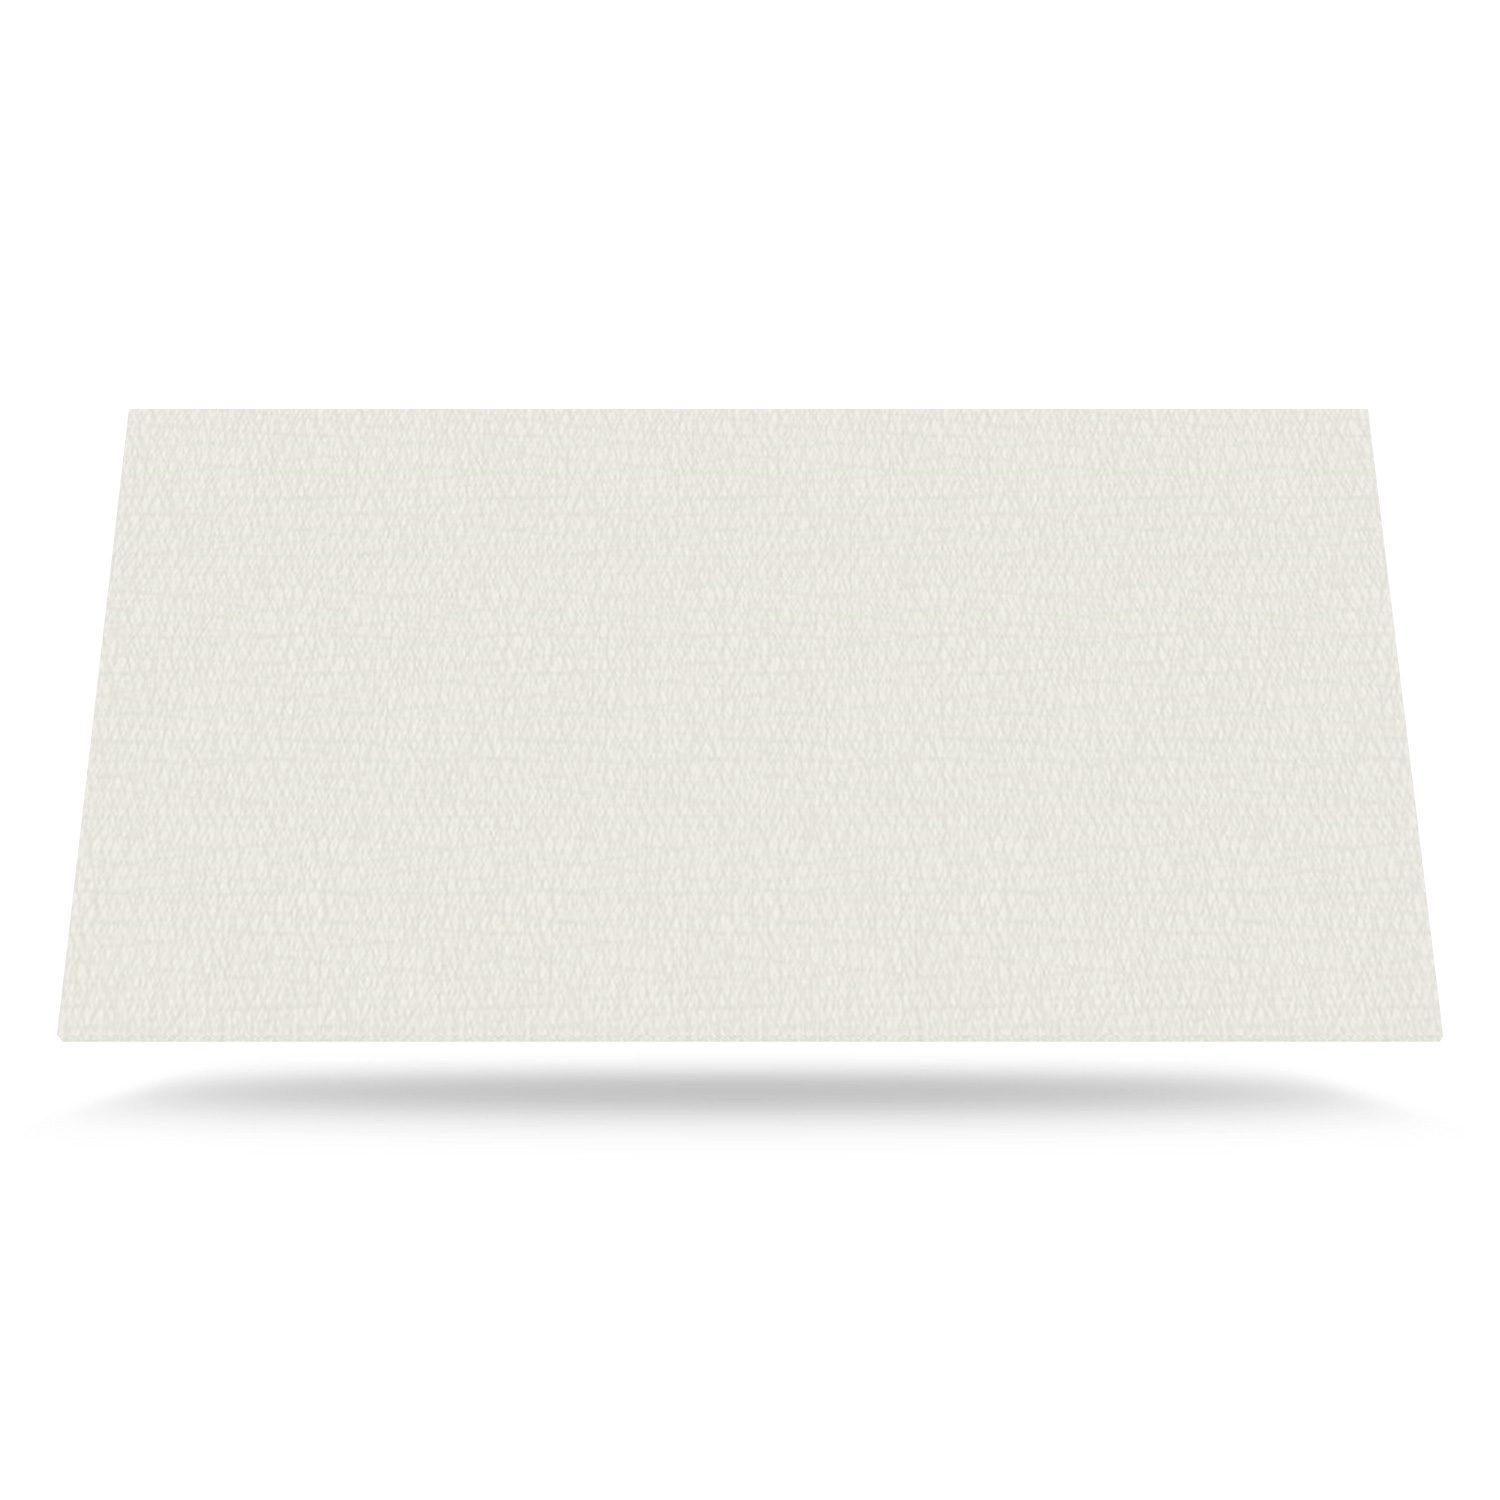 Beige Farve med tekstur - laminat bordplade på mål - 2139